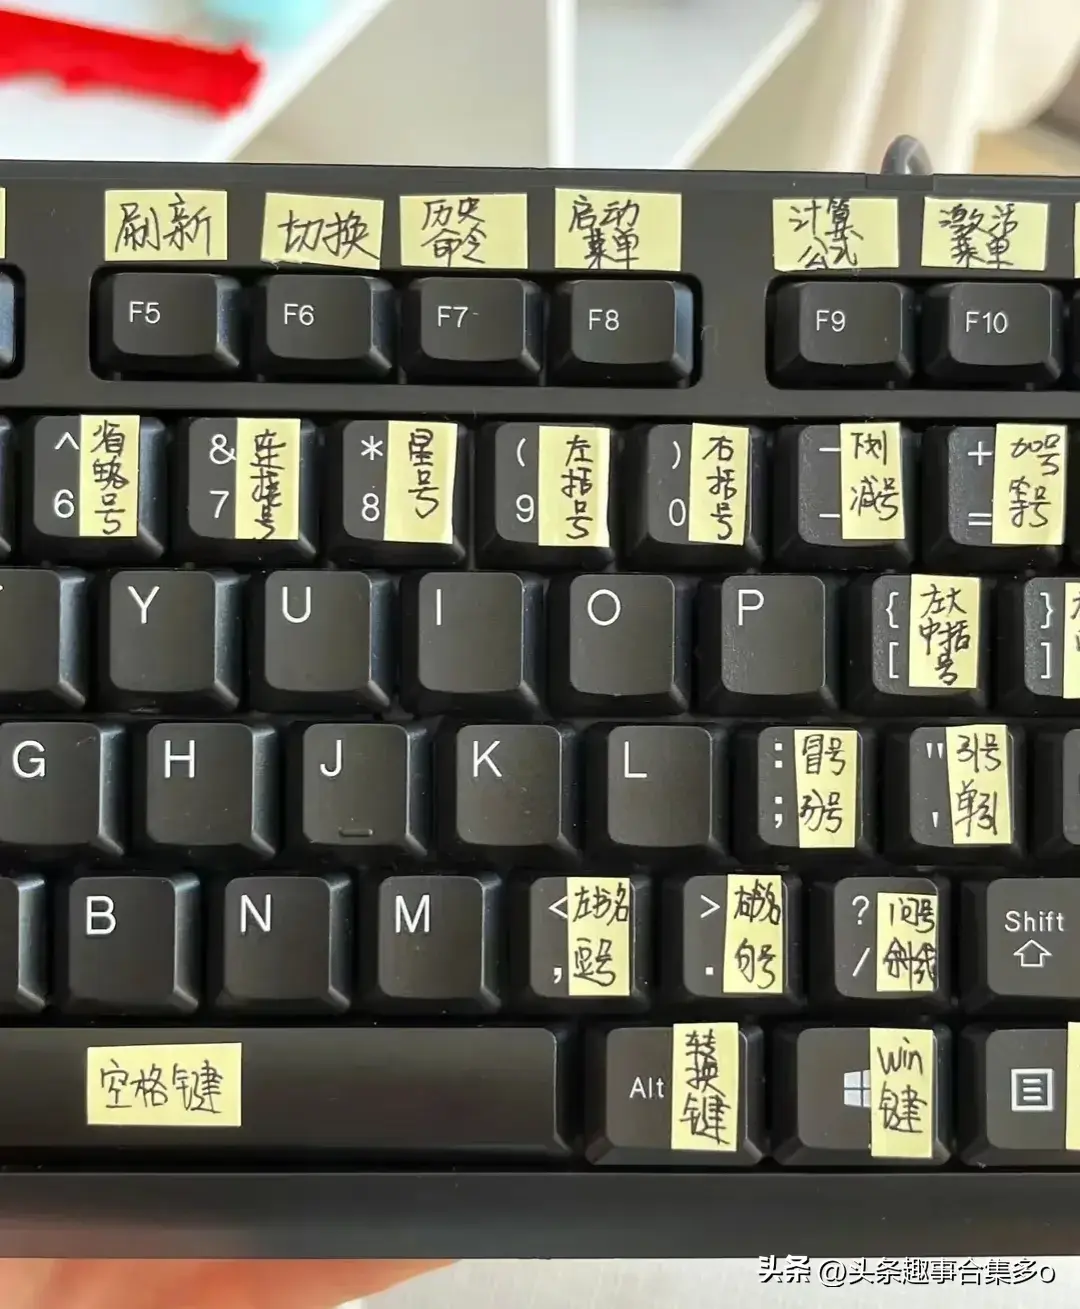 你可以不会电脑，但要知道键盘上的英文名称和常用的快捷键  第3张